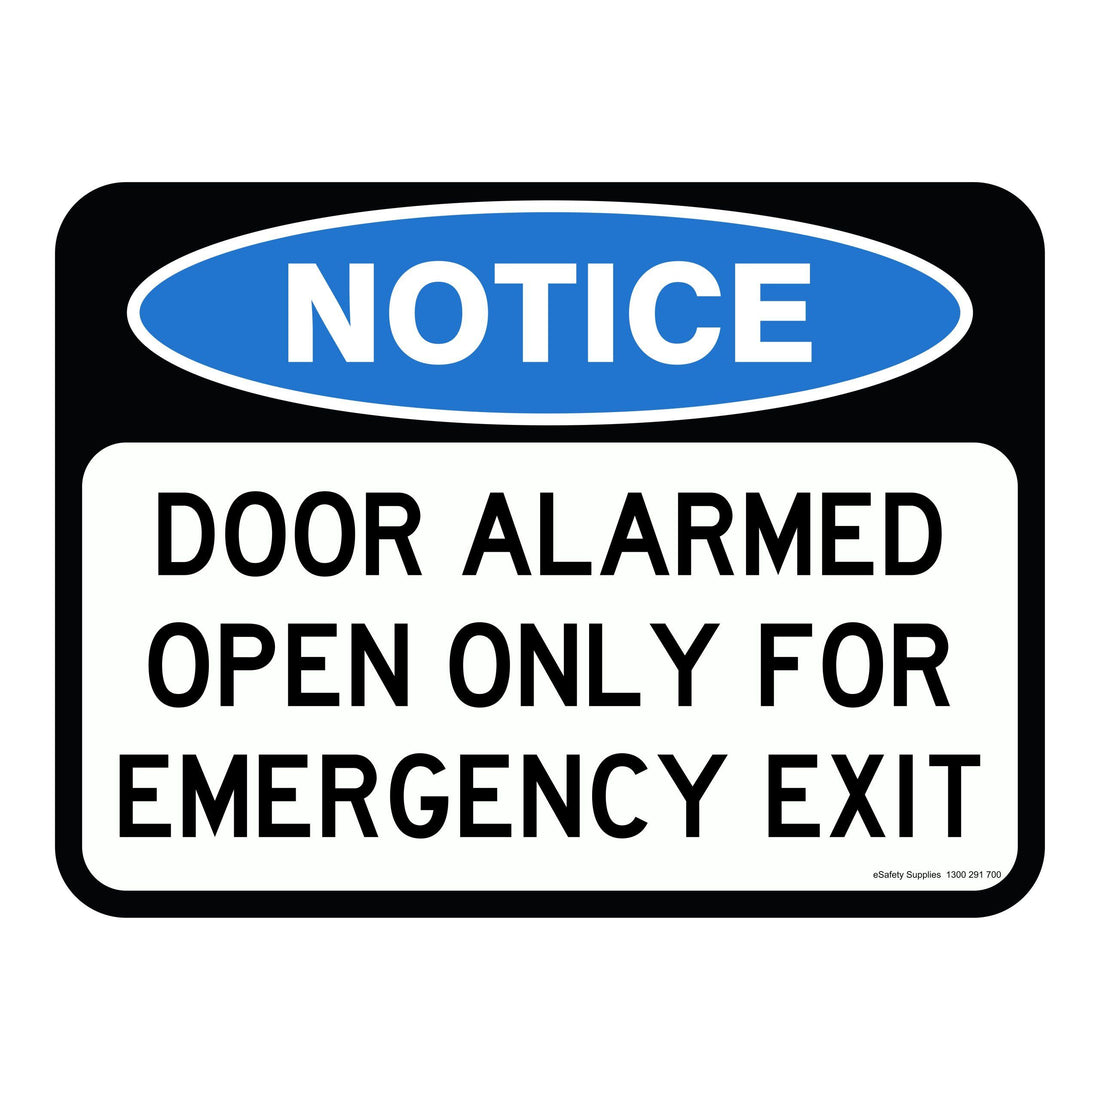 NOTICE - DOOR ALARMED OPEN ONLY FOR EMERGENCY EXIT